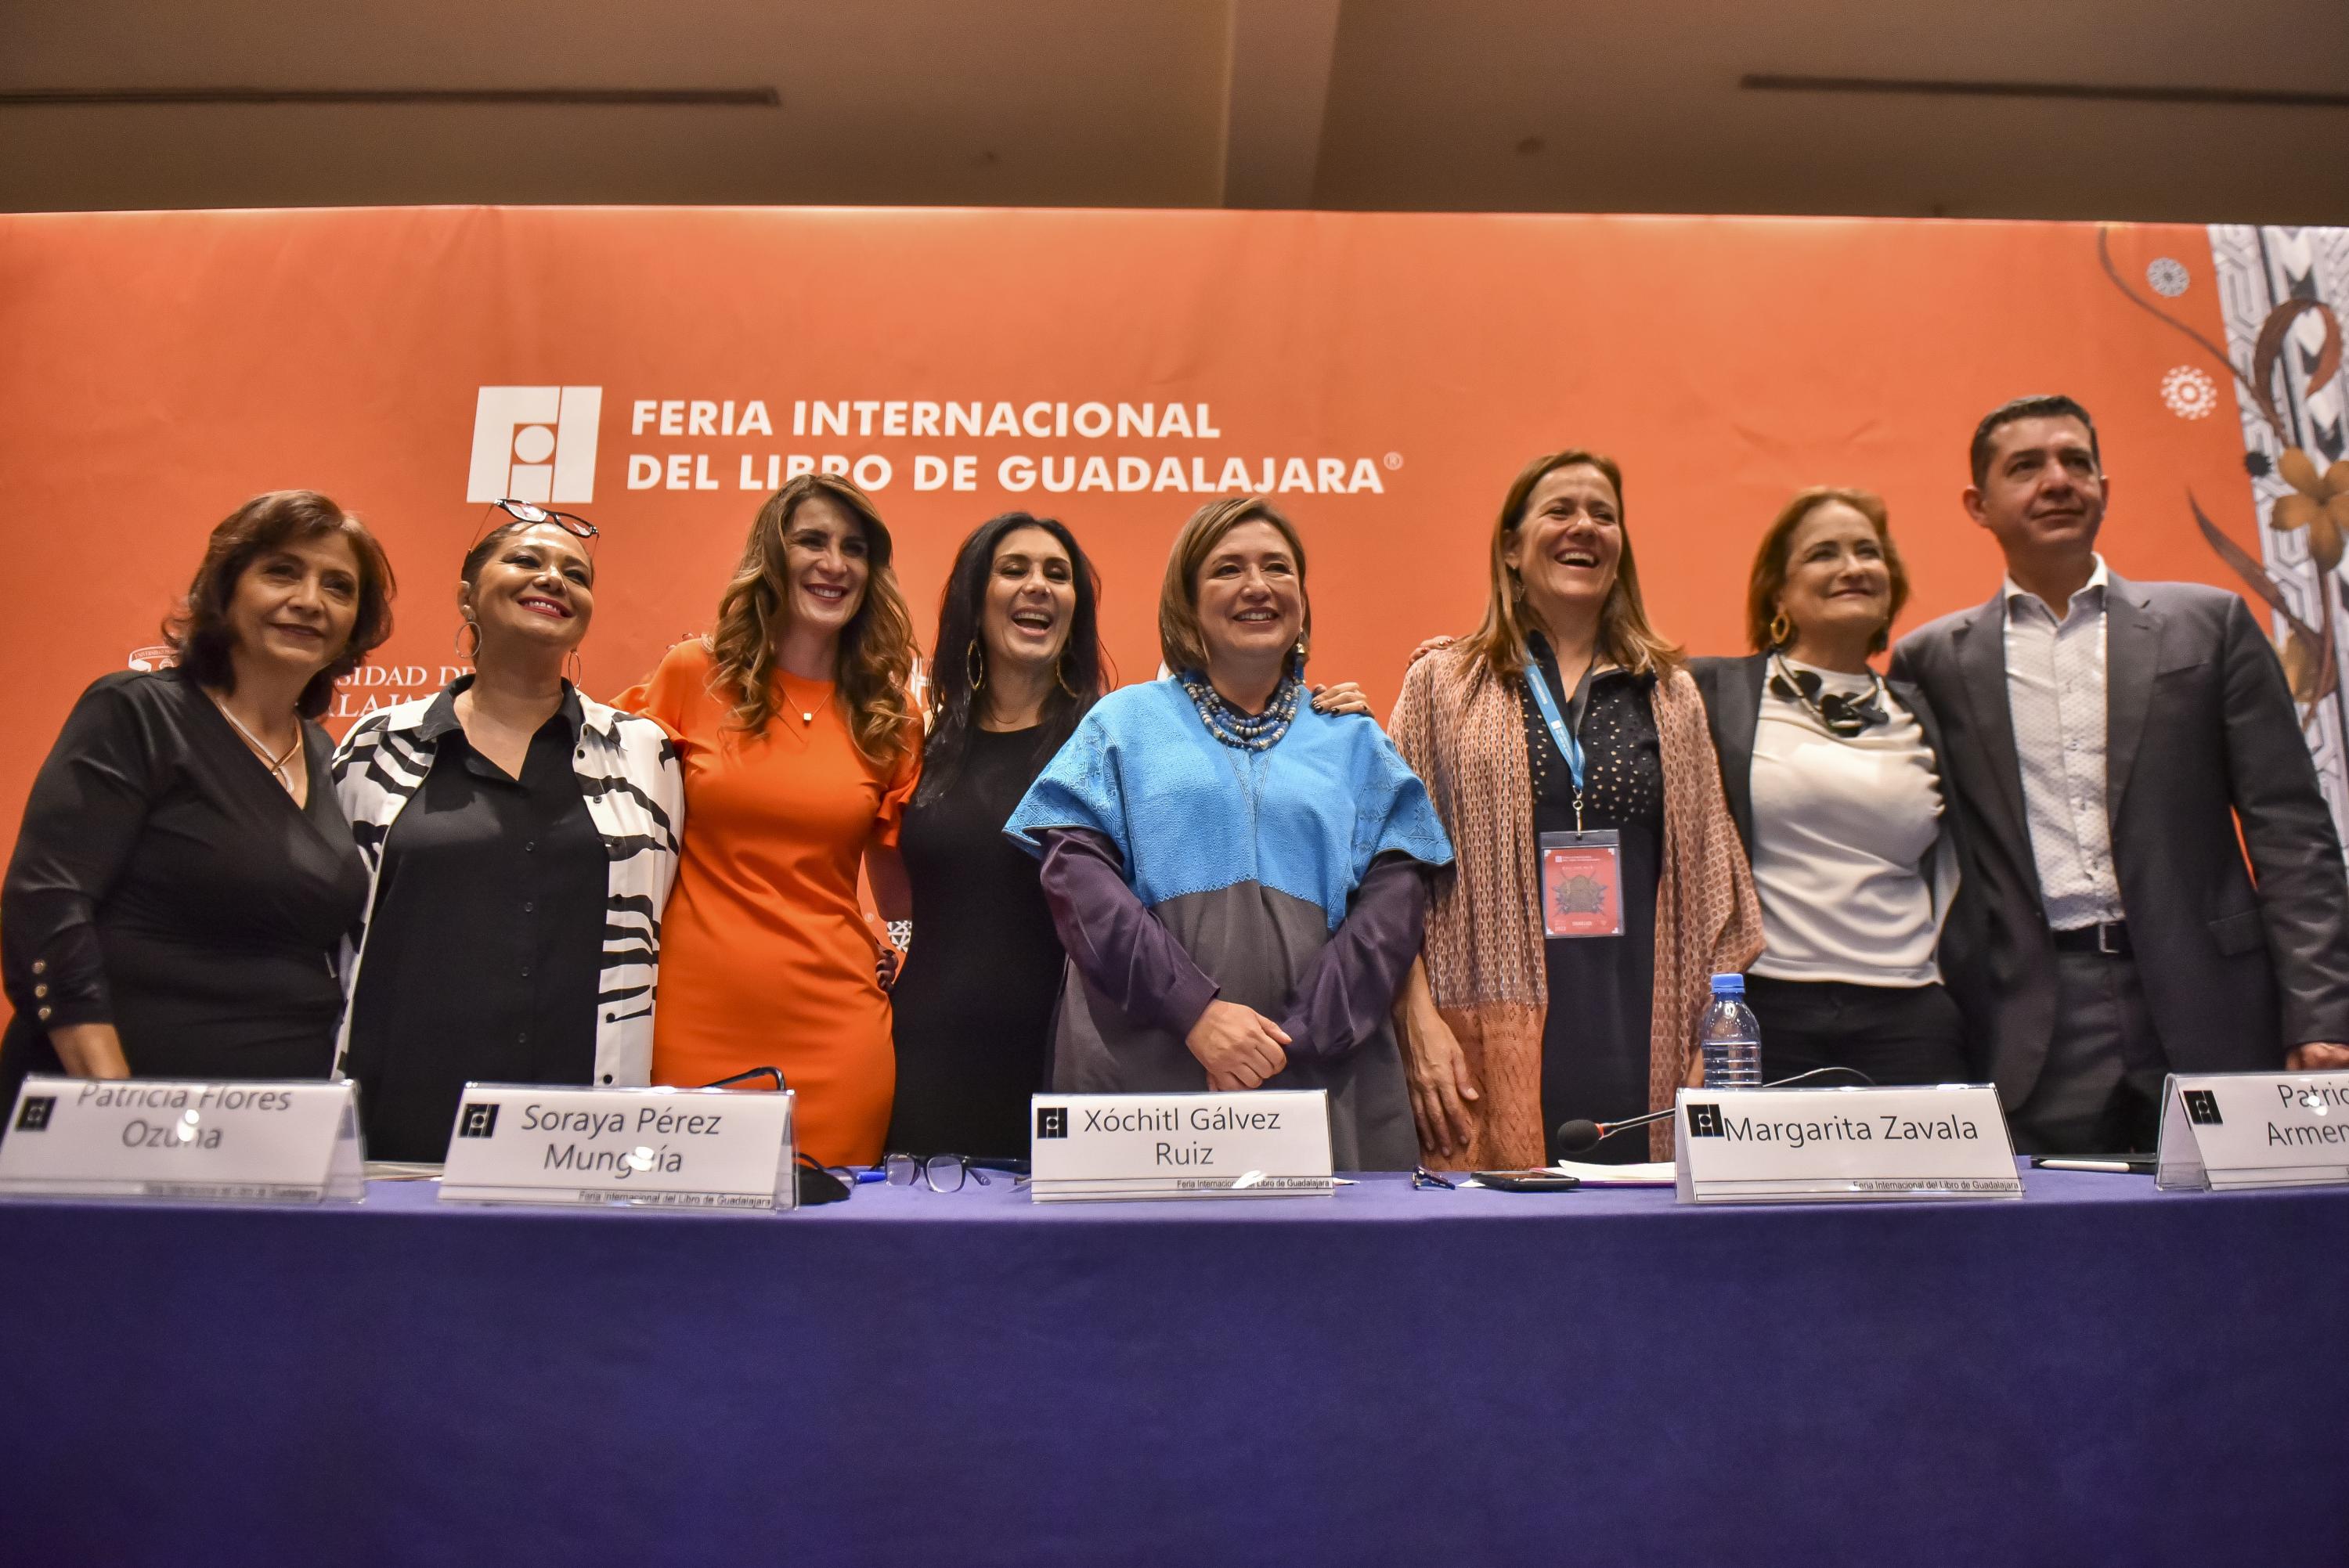 Mujeres líderes en la política mexicana del PAN, PRI y Morena participan en la segunda mesa sobre “Mujeres en el poder: el rumbo de México”, en el marco de FIL